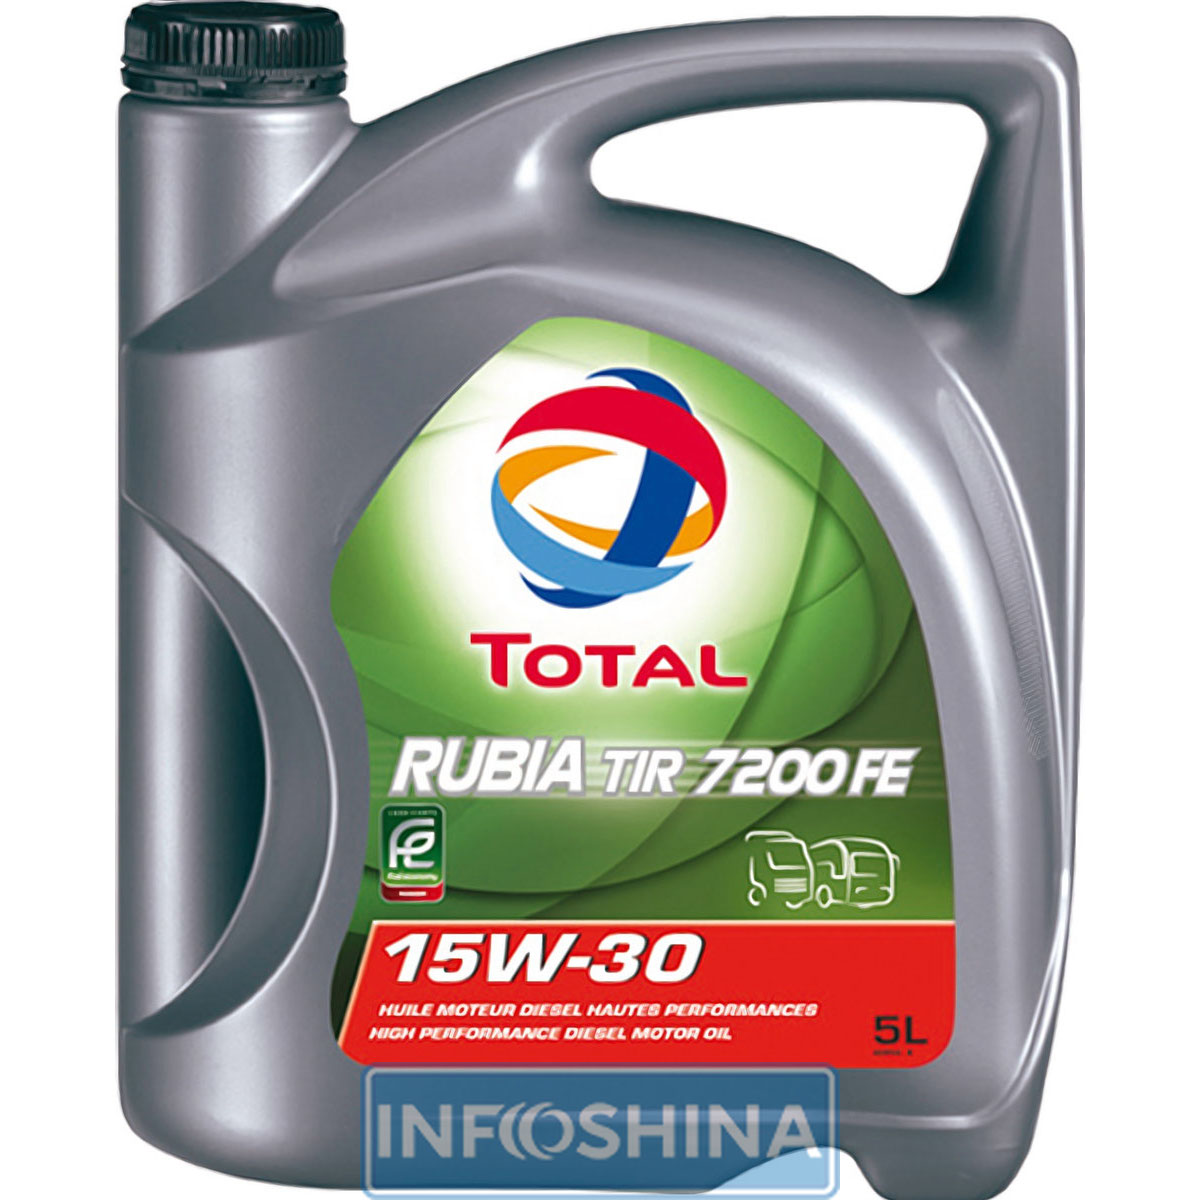 Total Rubia TIR 7200 FE 15W-30